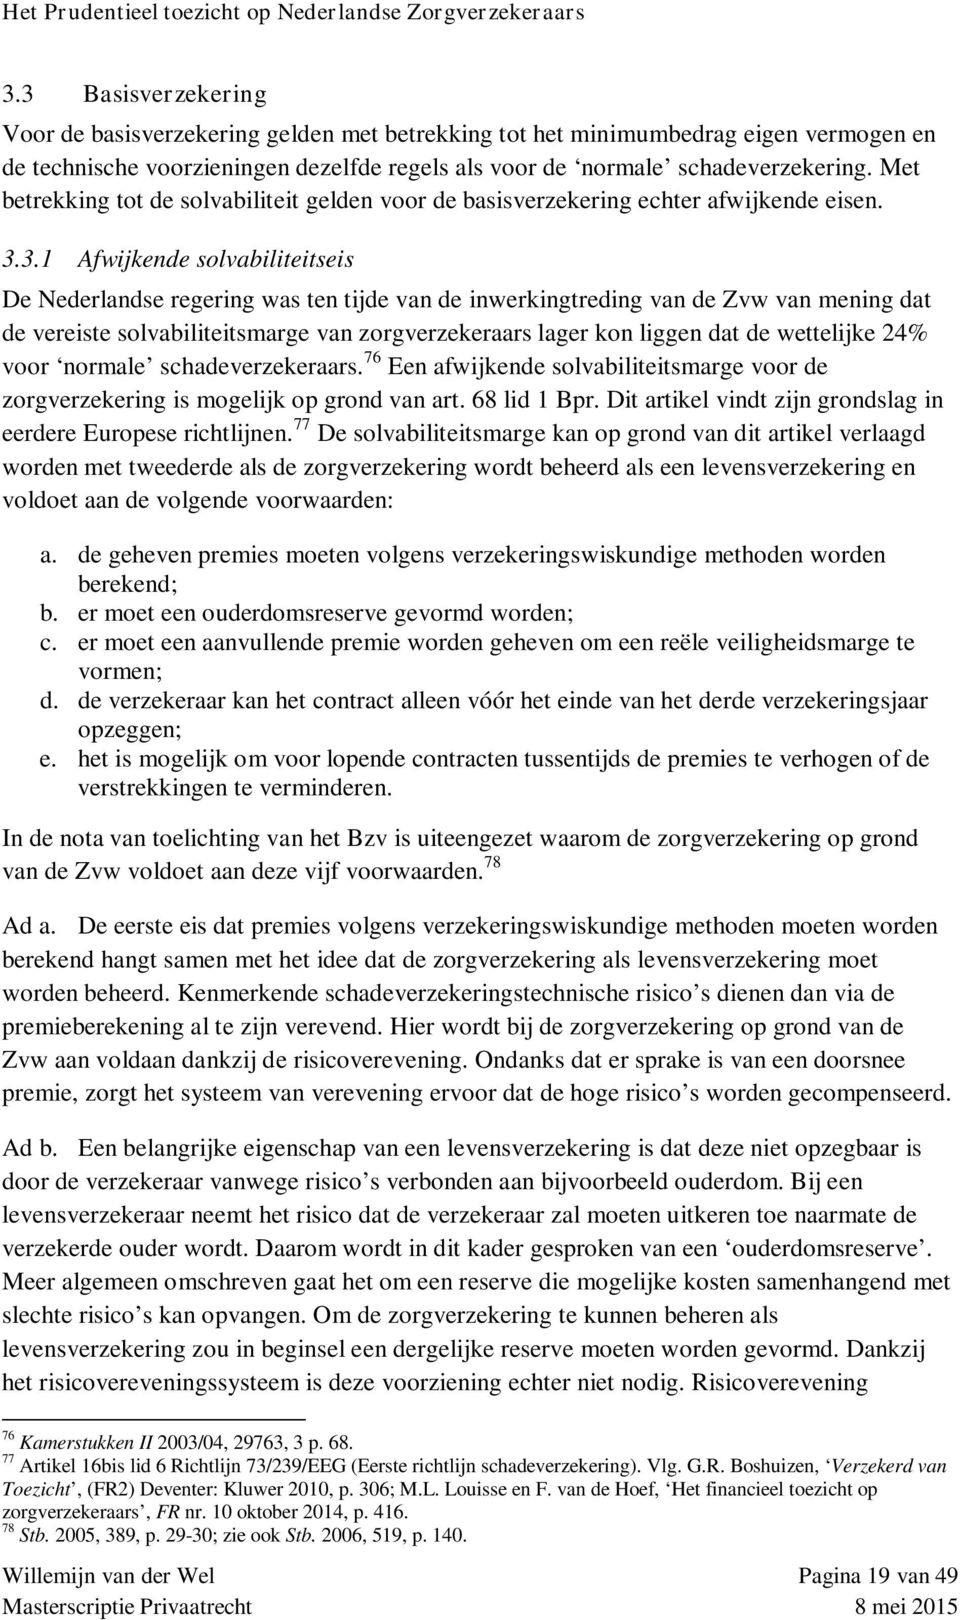 3.1 Afwijkende solvabiliteitseis De Nederlandse regering was ten tijde van de inwerkingtreding van de Zvw van mening dat de vereiste solvabiliteitsmarge van zorgverzekeraars lager kon liggen dat de